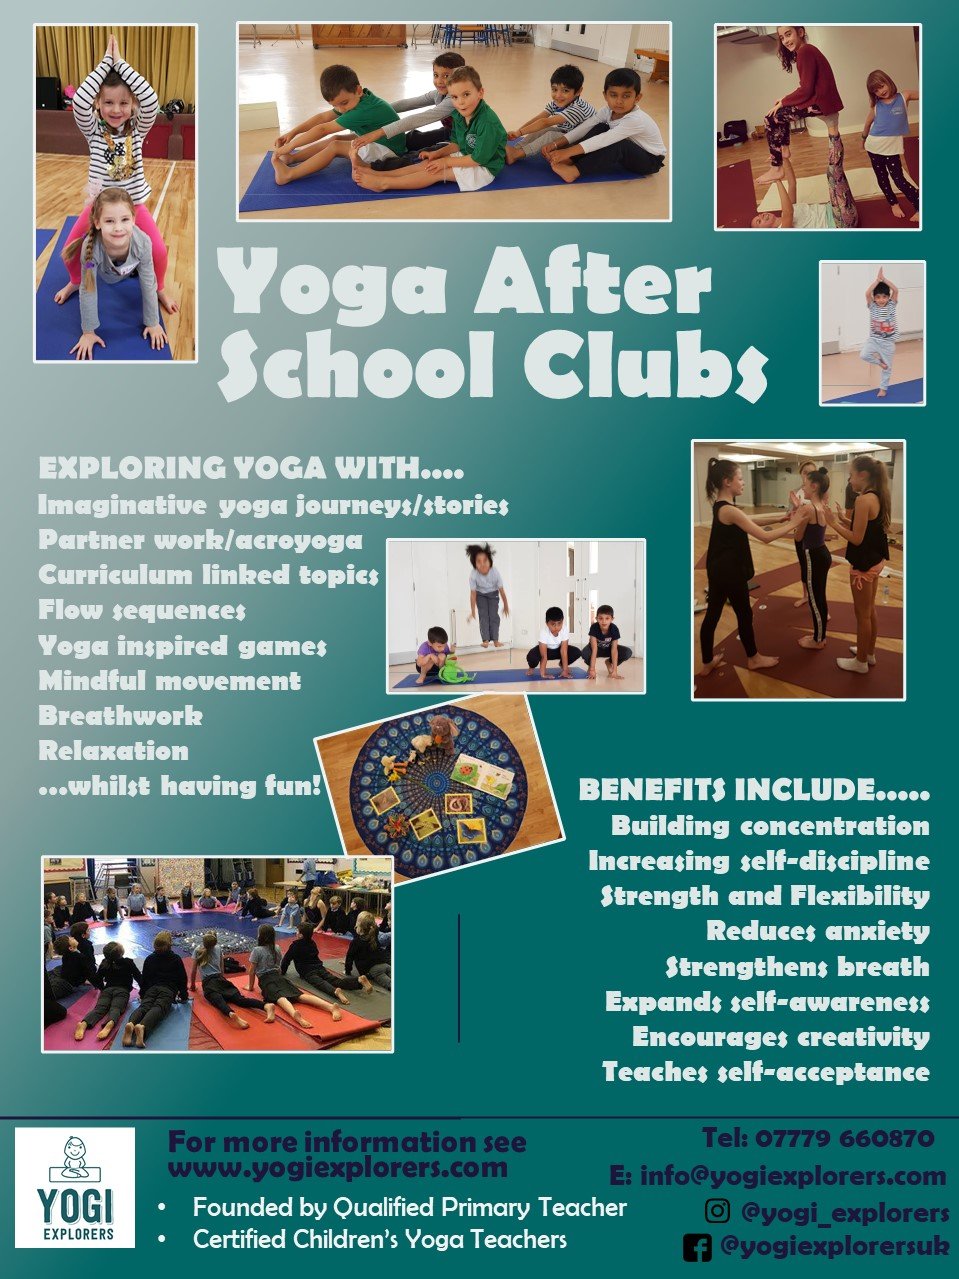 Yoga After School Clubs Bookwhen.jpg